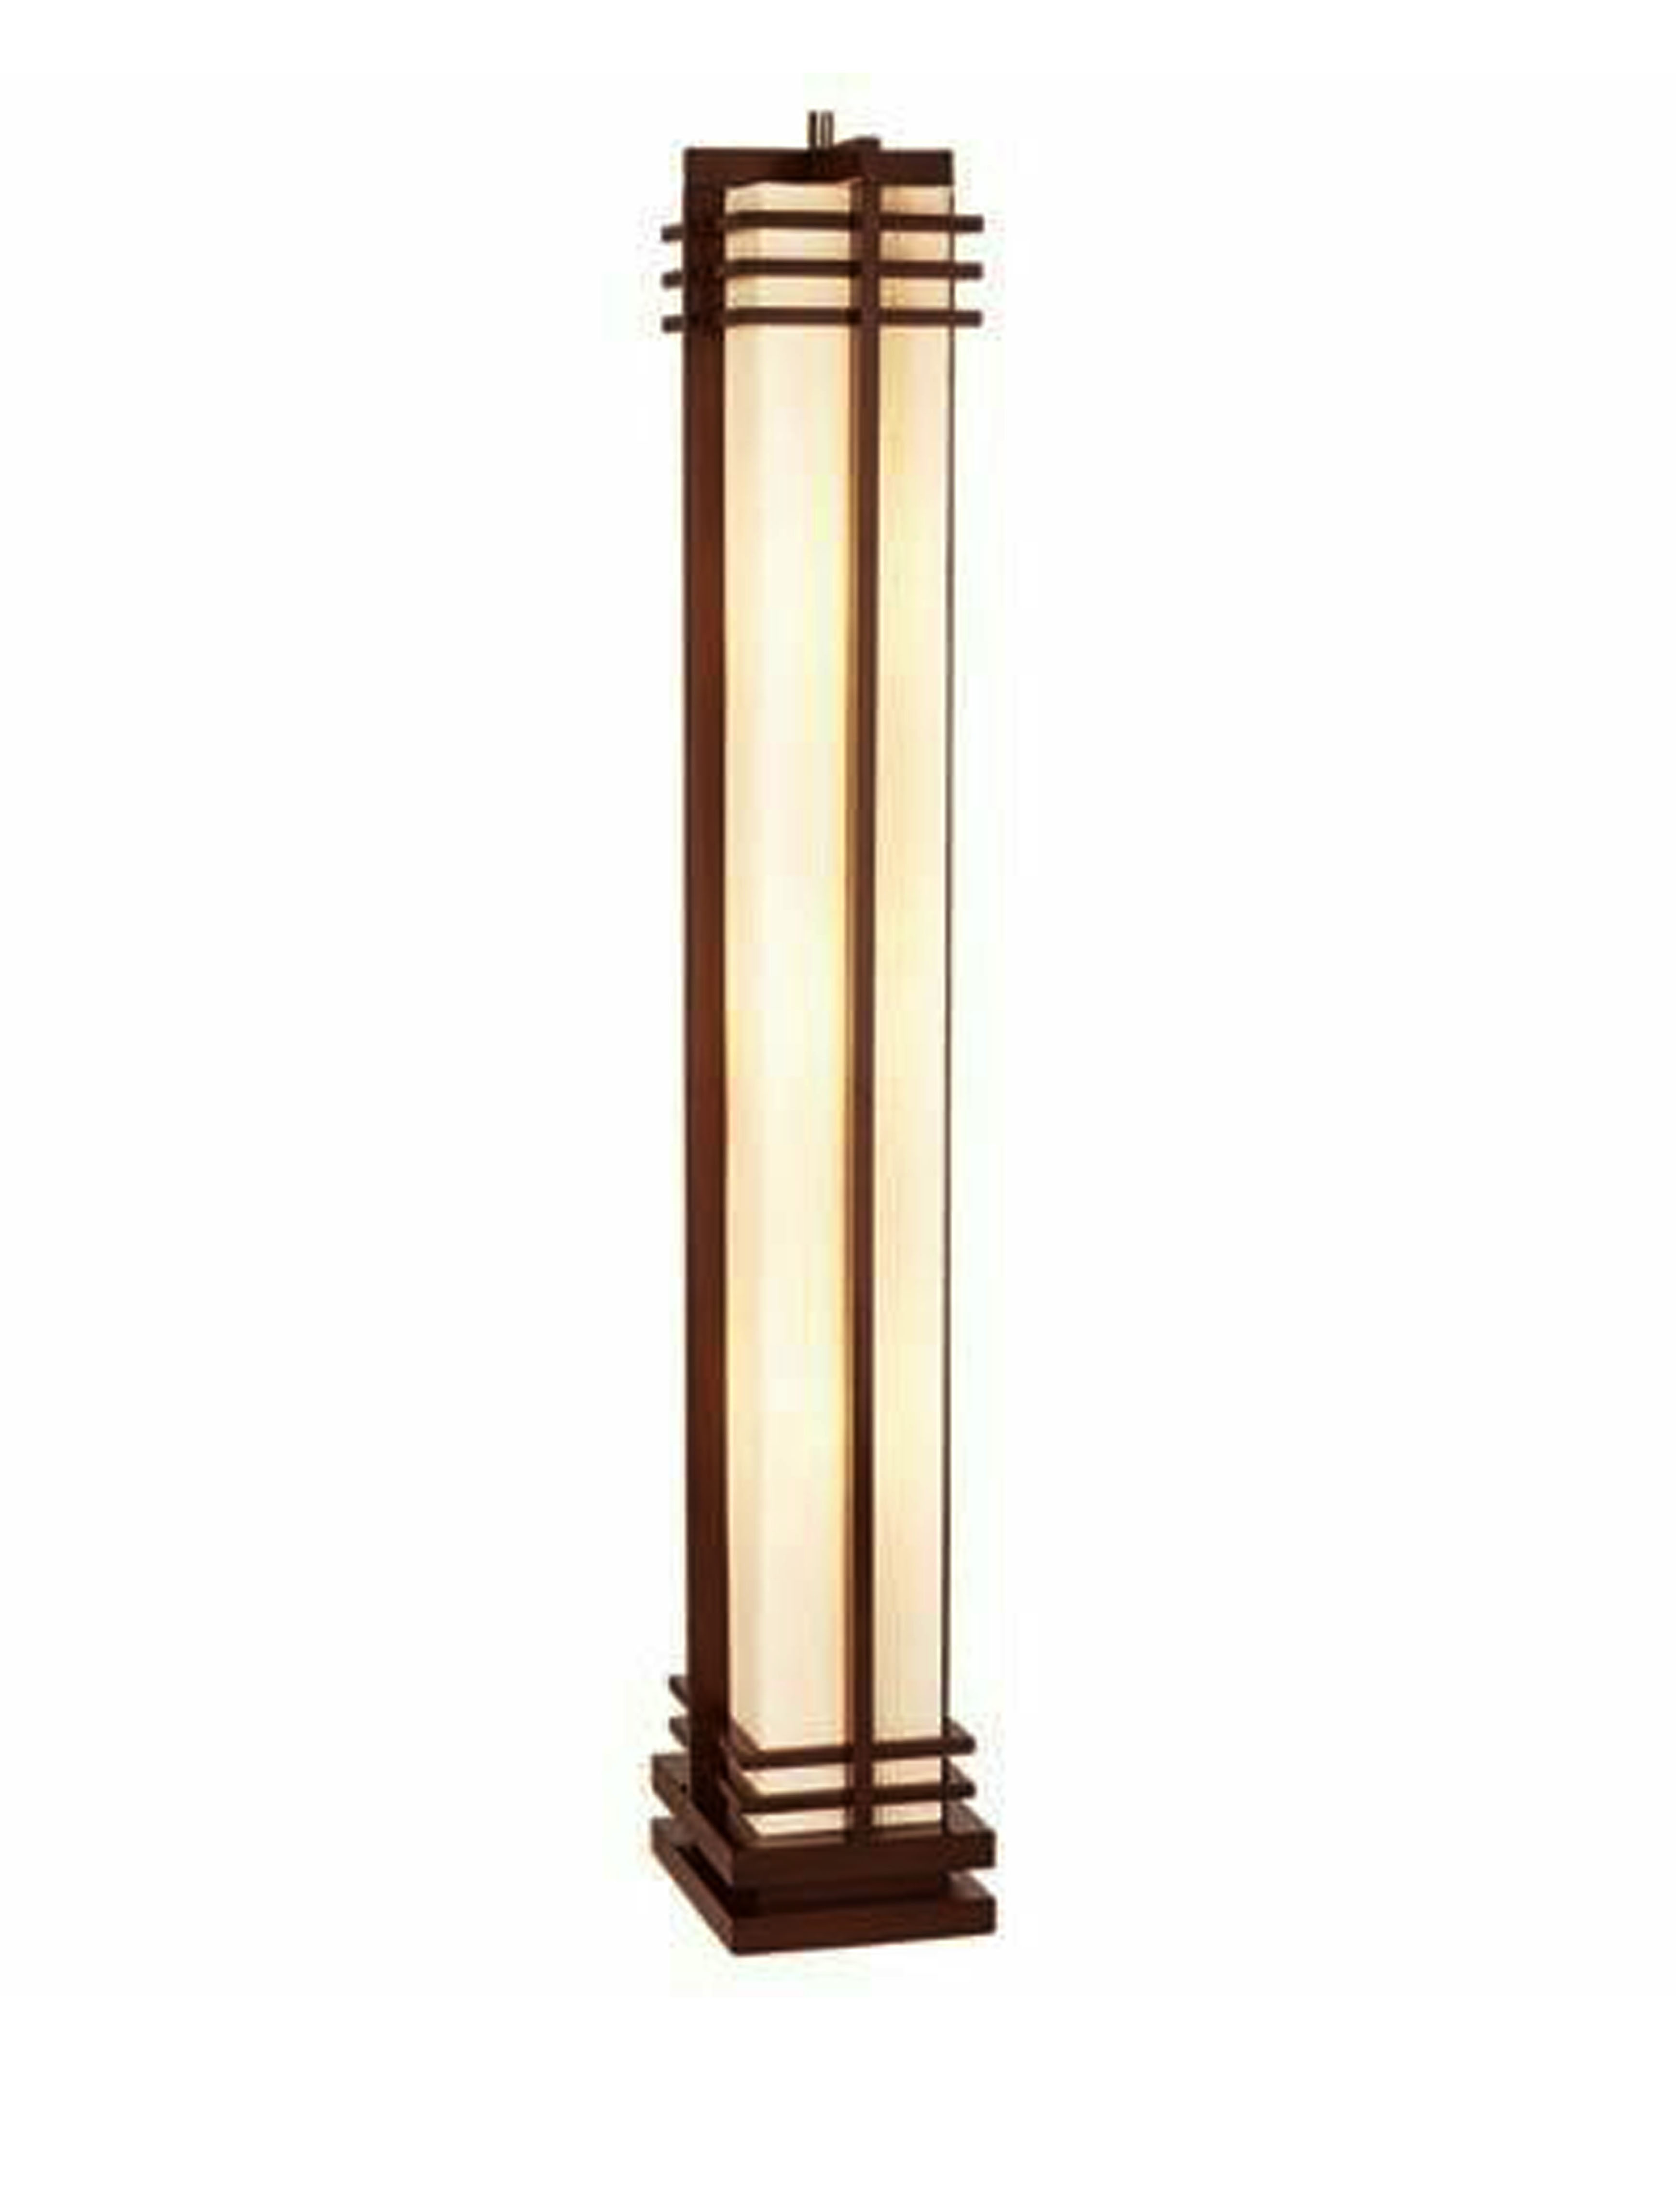 Wooden Floor Lamps Manufacturers, Column Style Floor Lamps